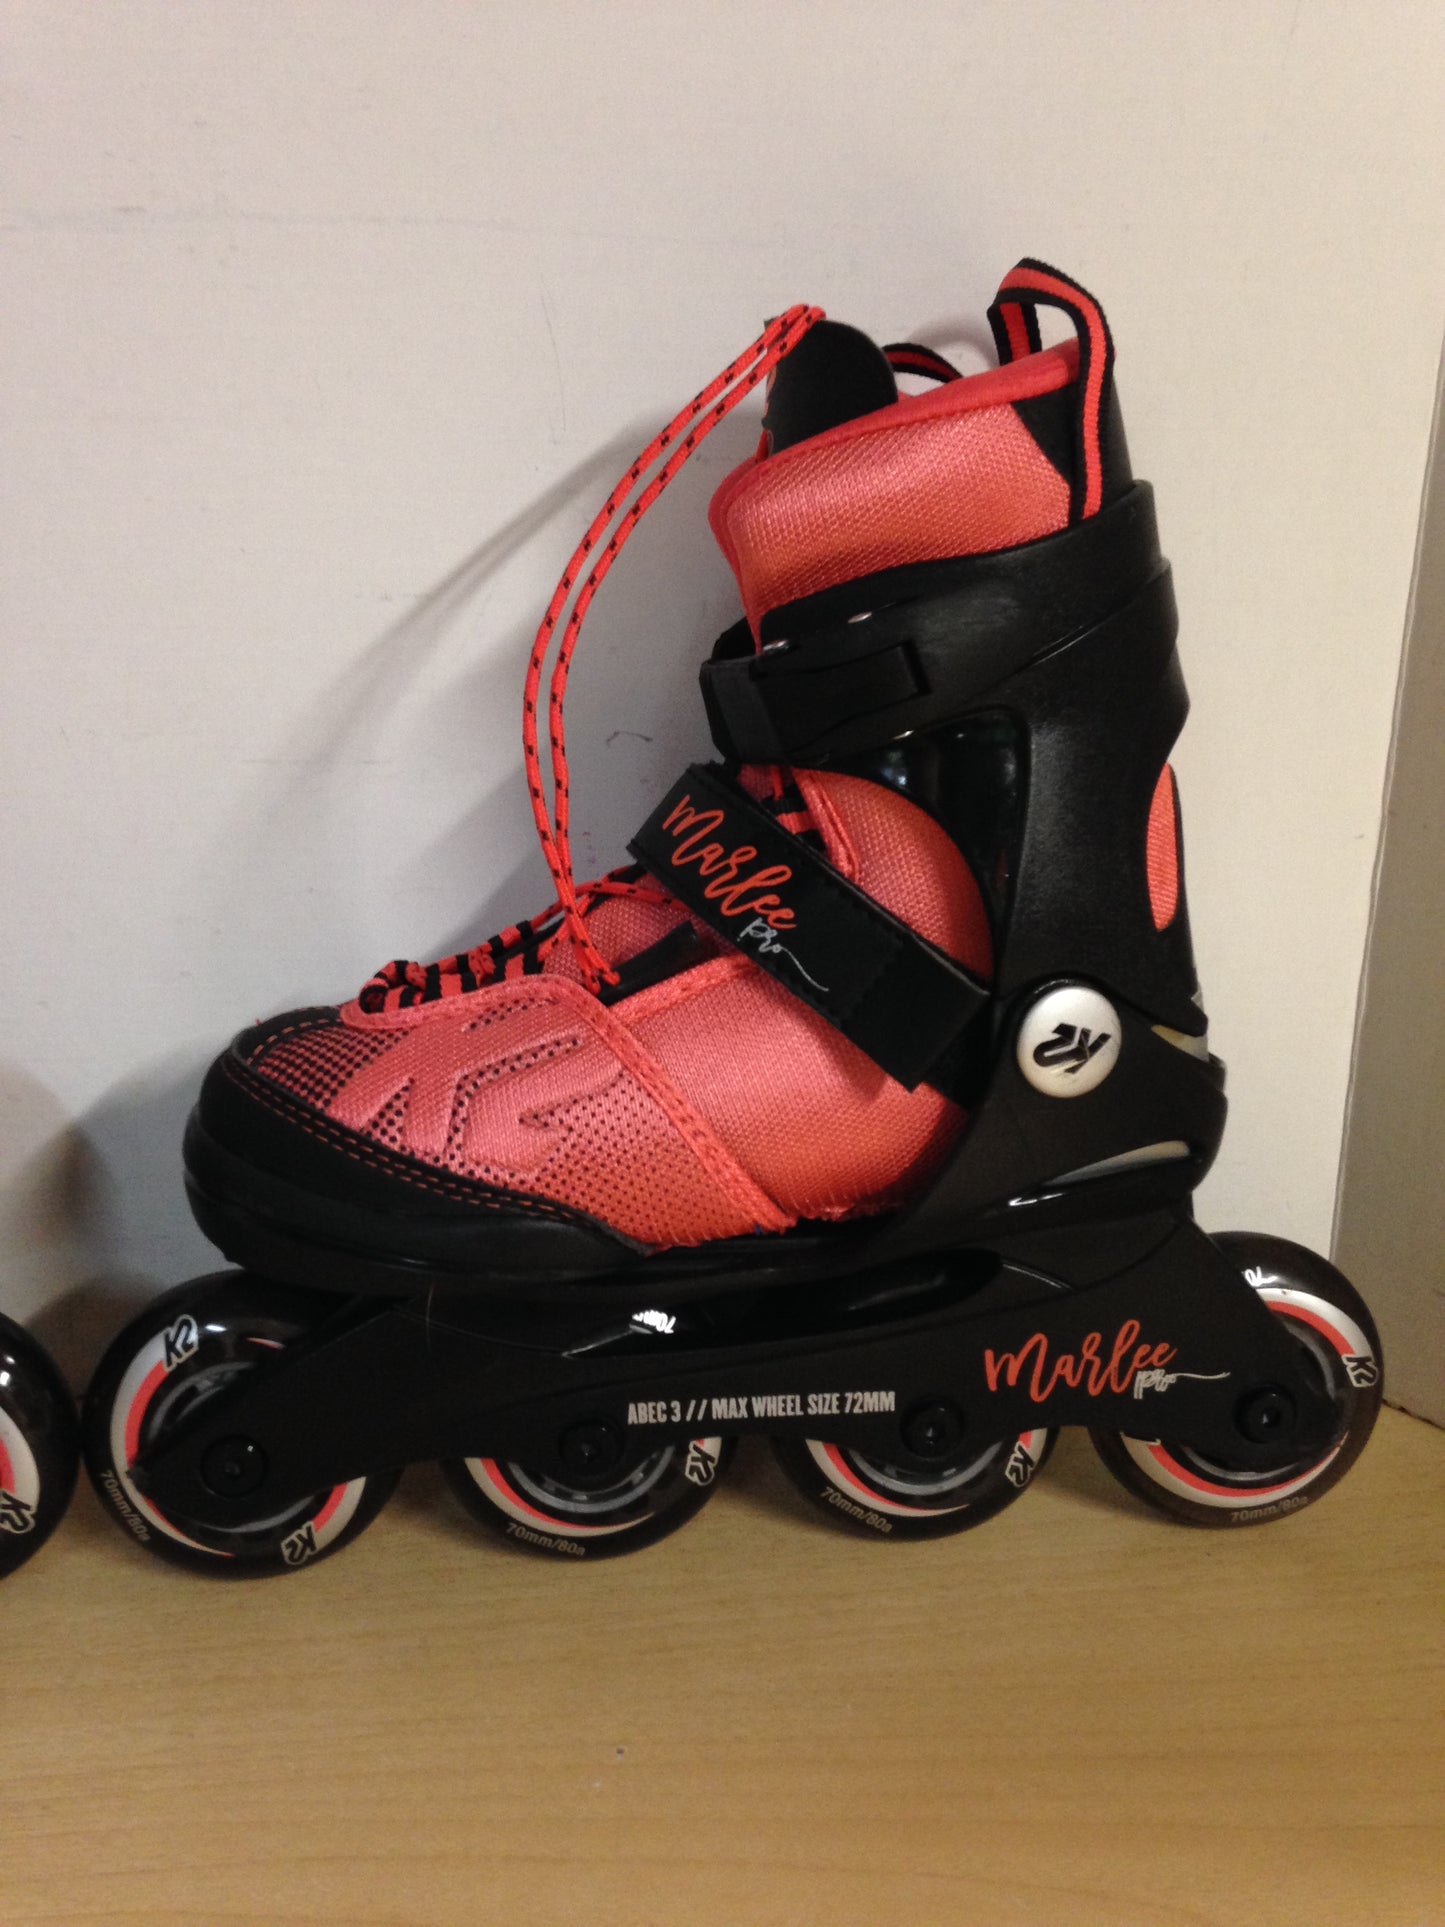 Inline Roller Skates Child Size 11-2 Adjustable K-2 Marlee Pro Raspberry Black Rubber Tires New Demo Model